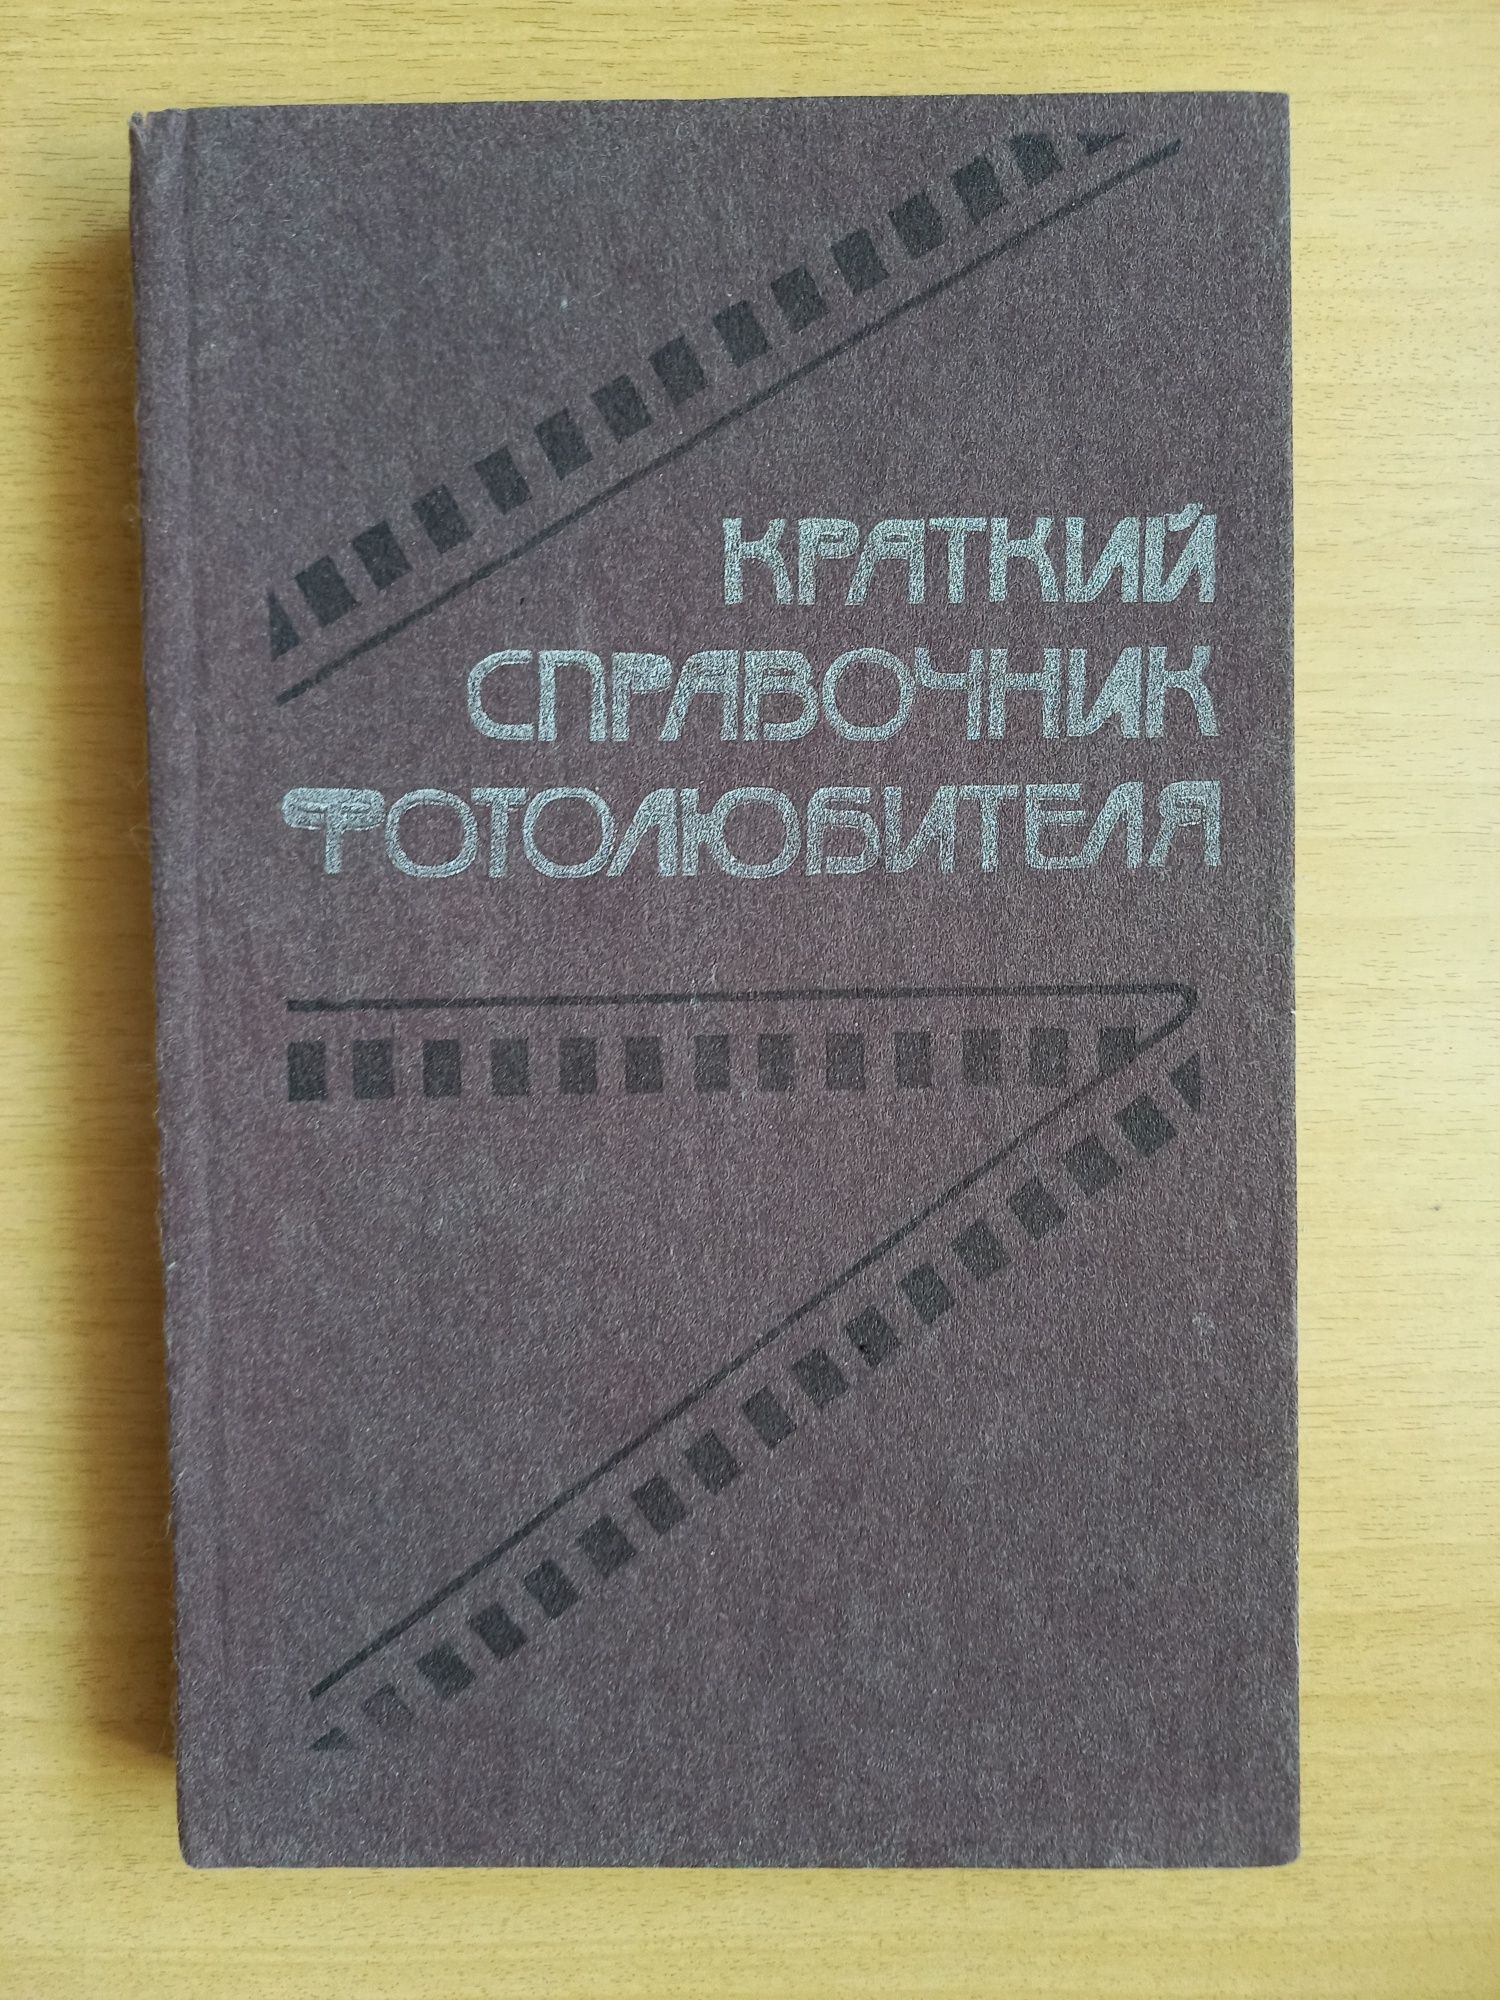 Краткий справочник фотолюбителя. Издательство "Казахстан". 1988 год.